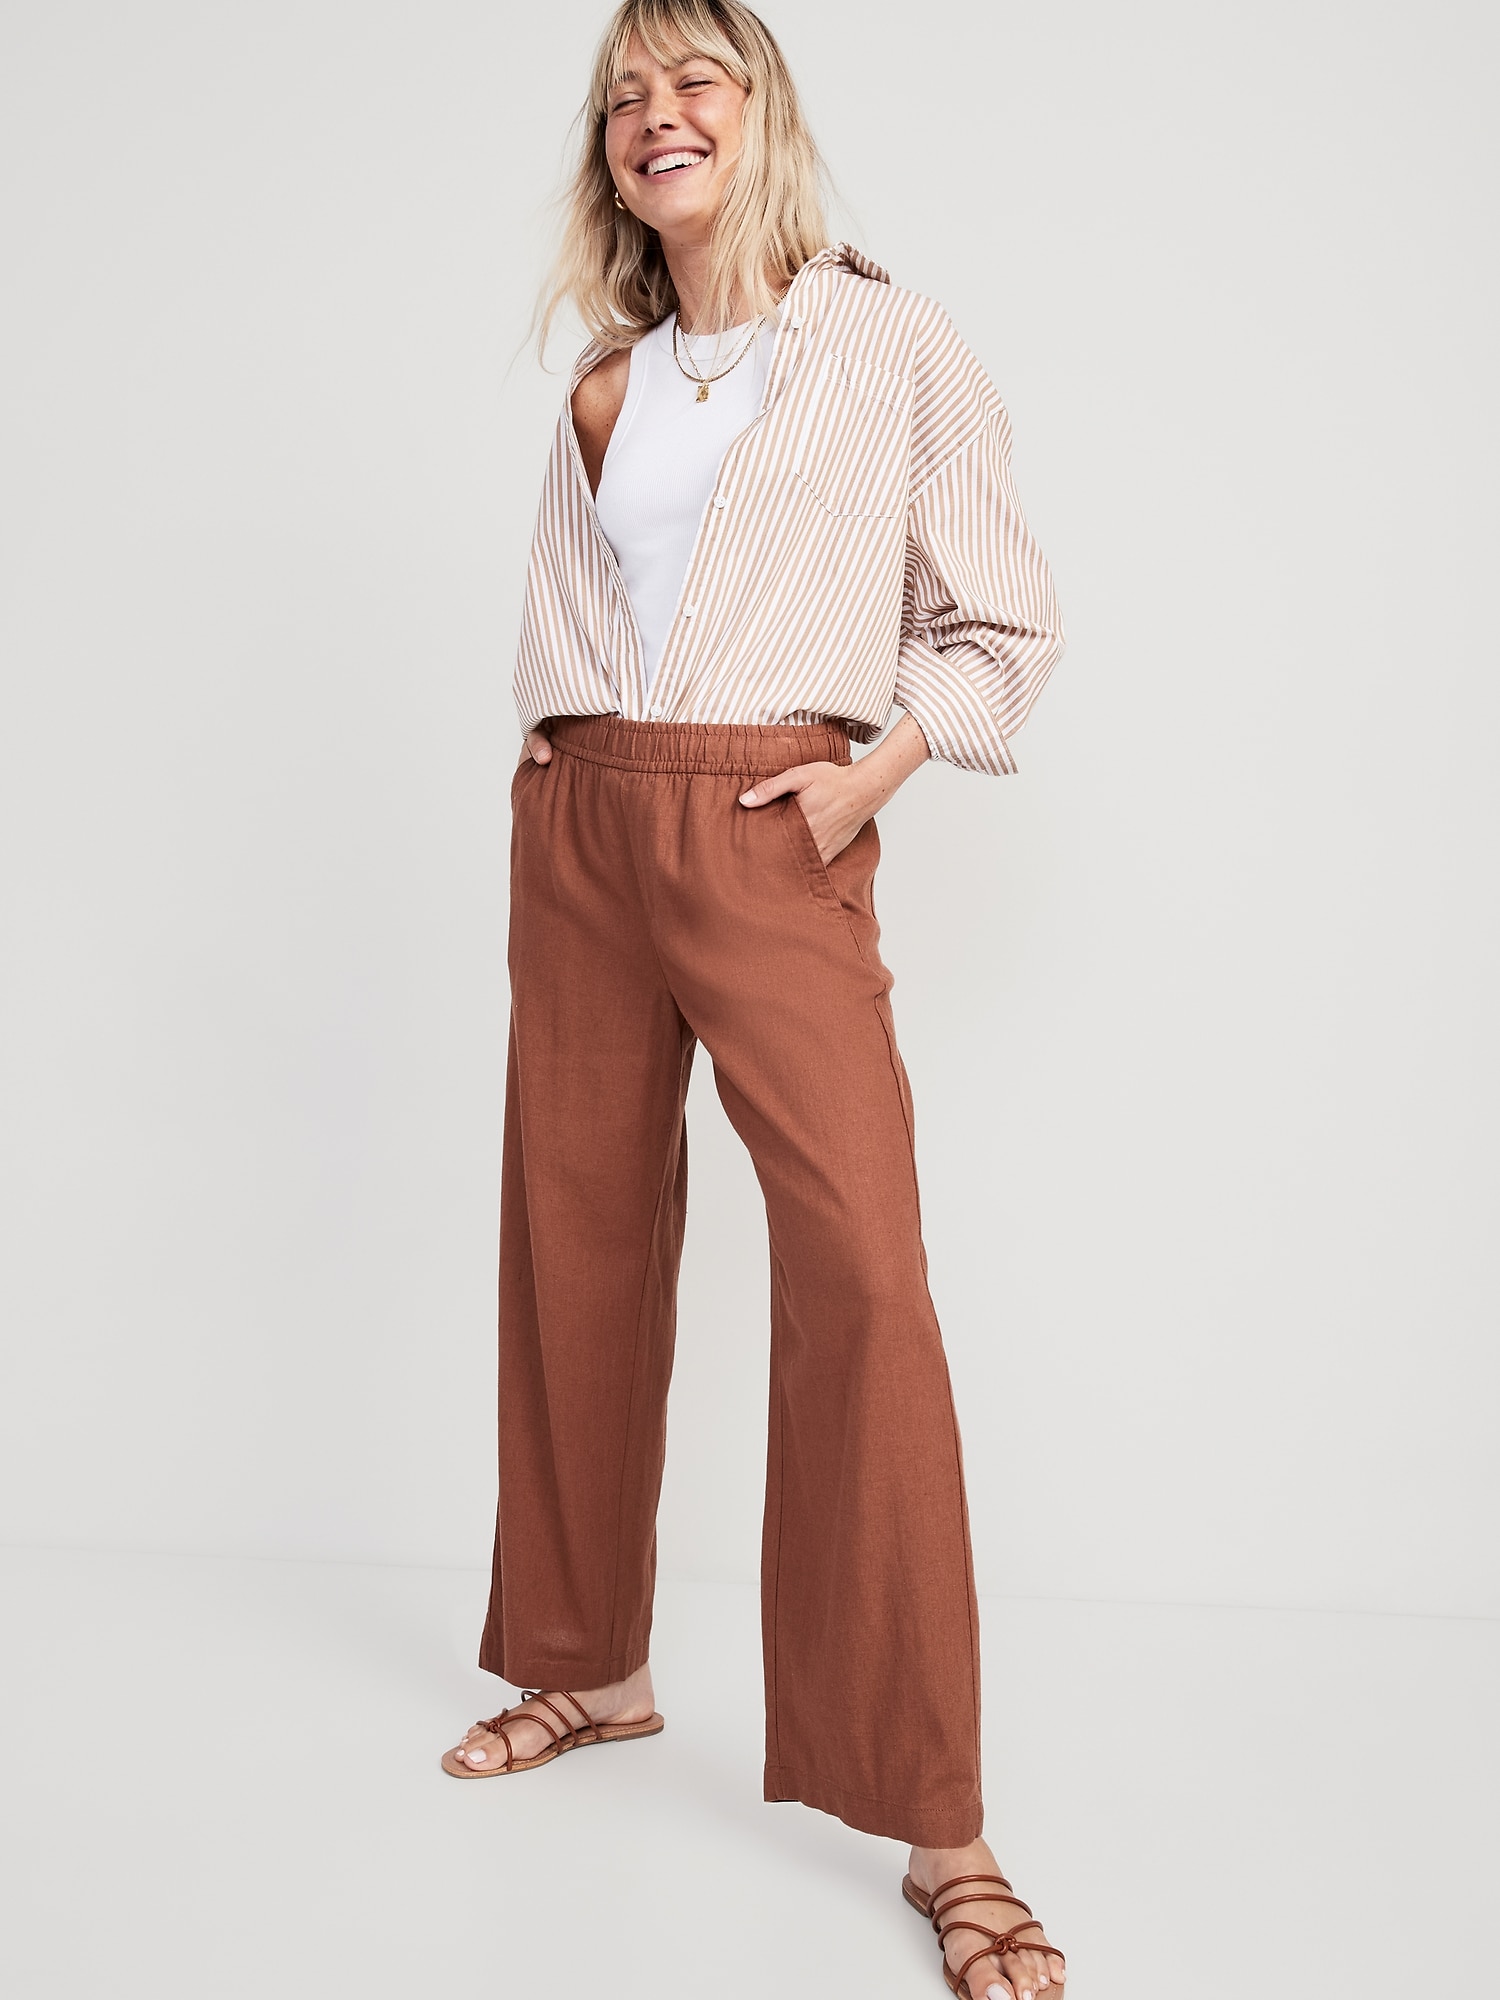 3 Ways to Style Old Navy Khaki Linen Pants 